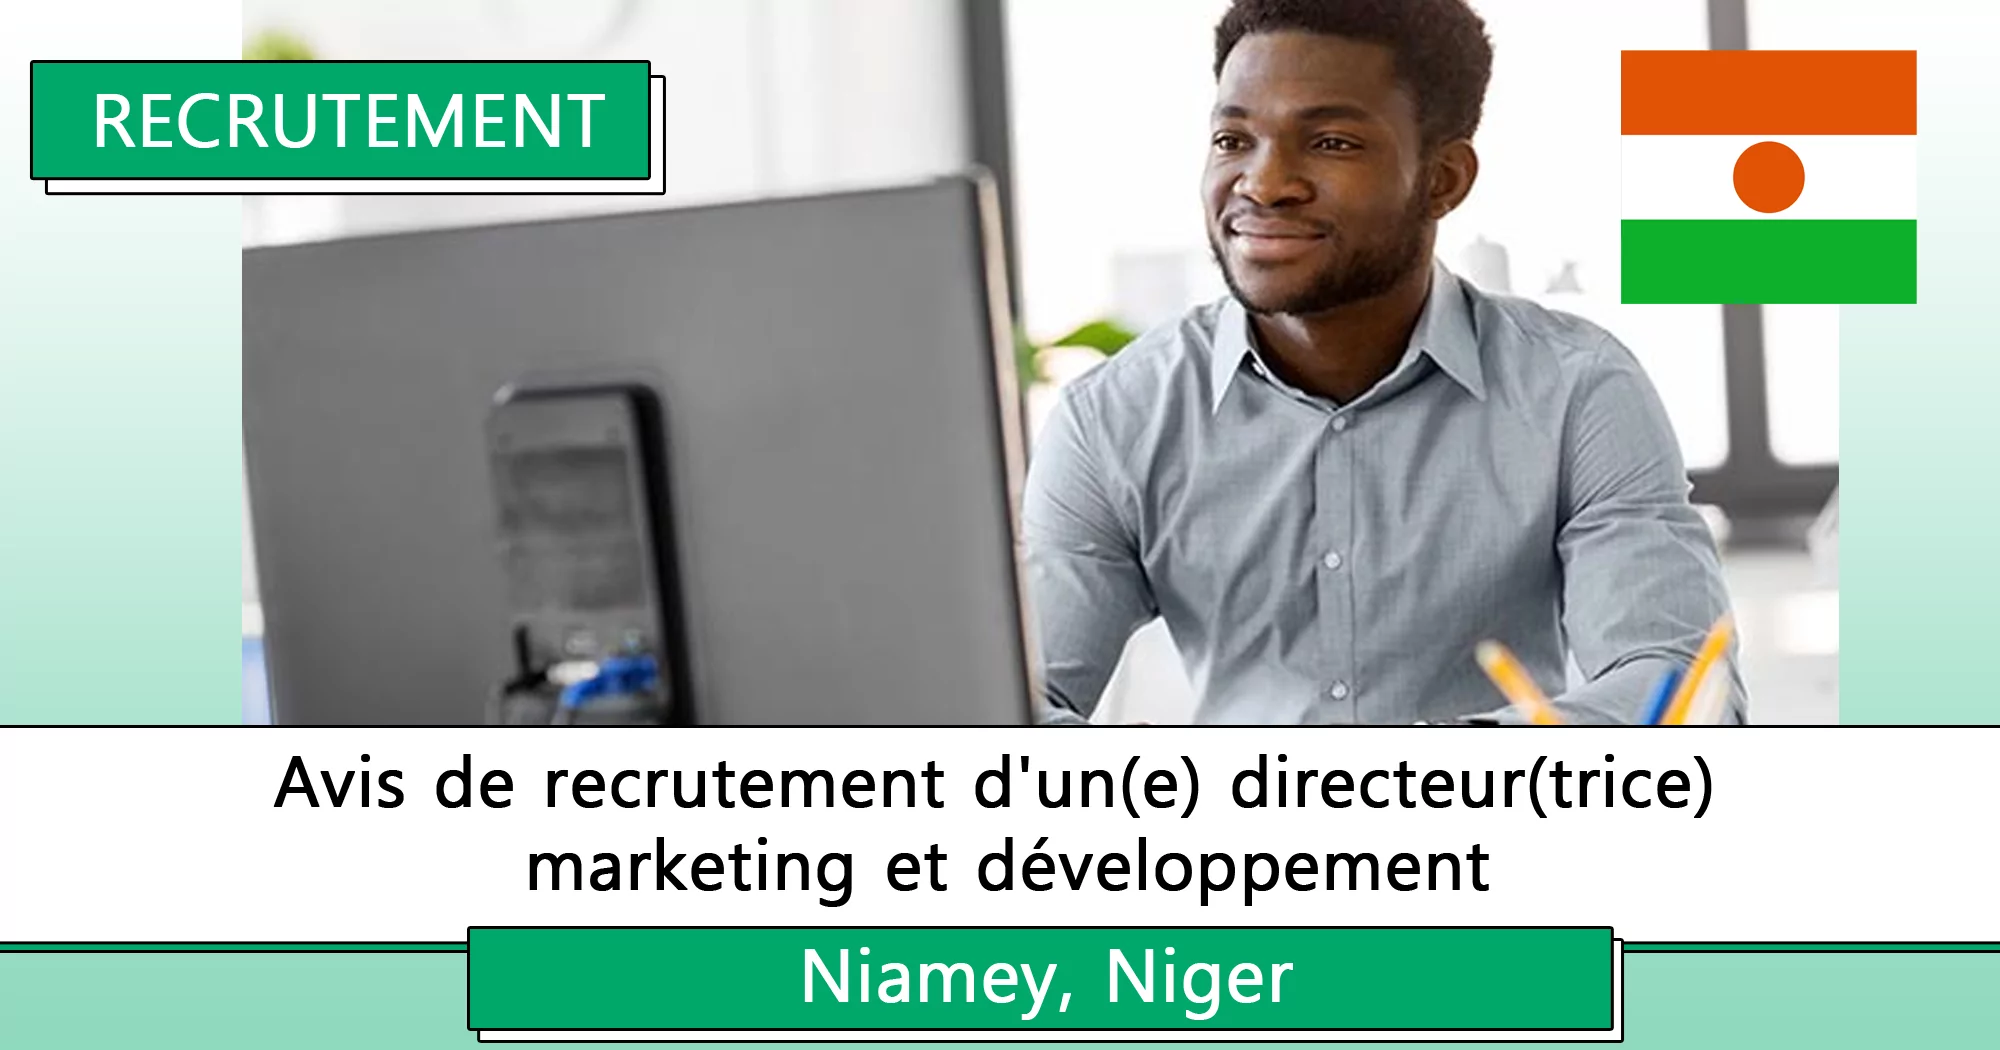 Avis de recrutement d’un(e) directeur(trice) marketing et développement, Niamey, Niger